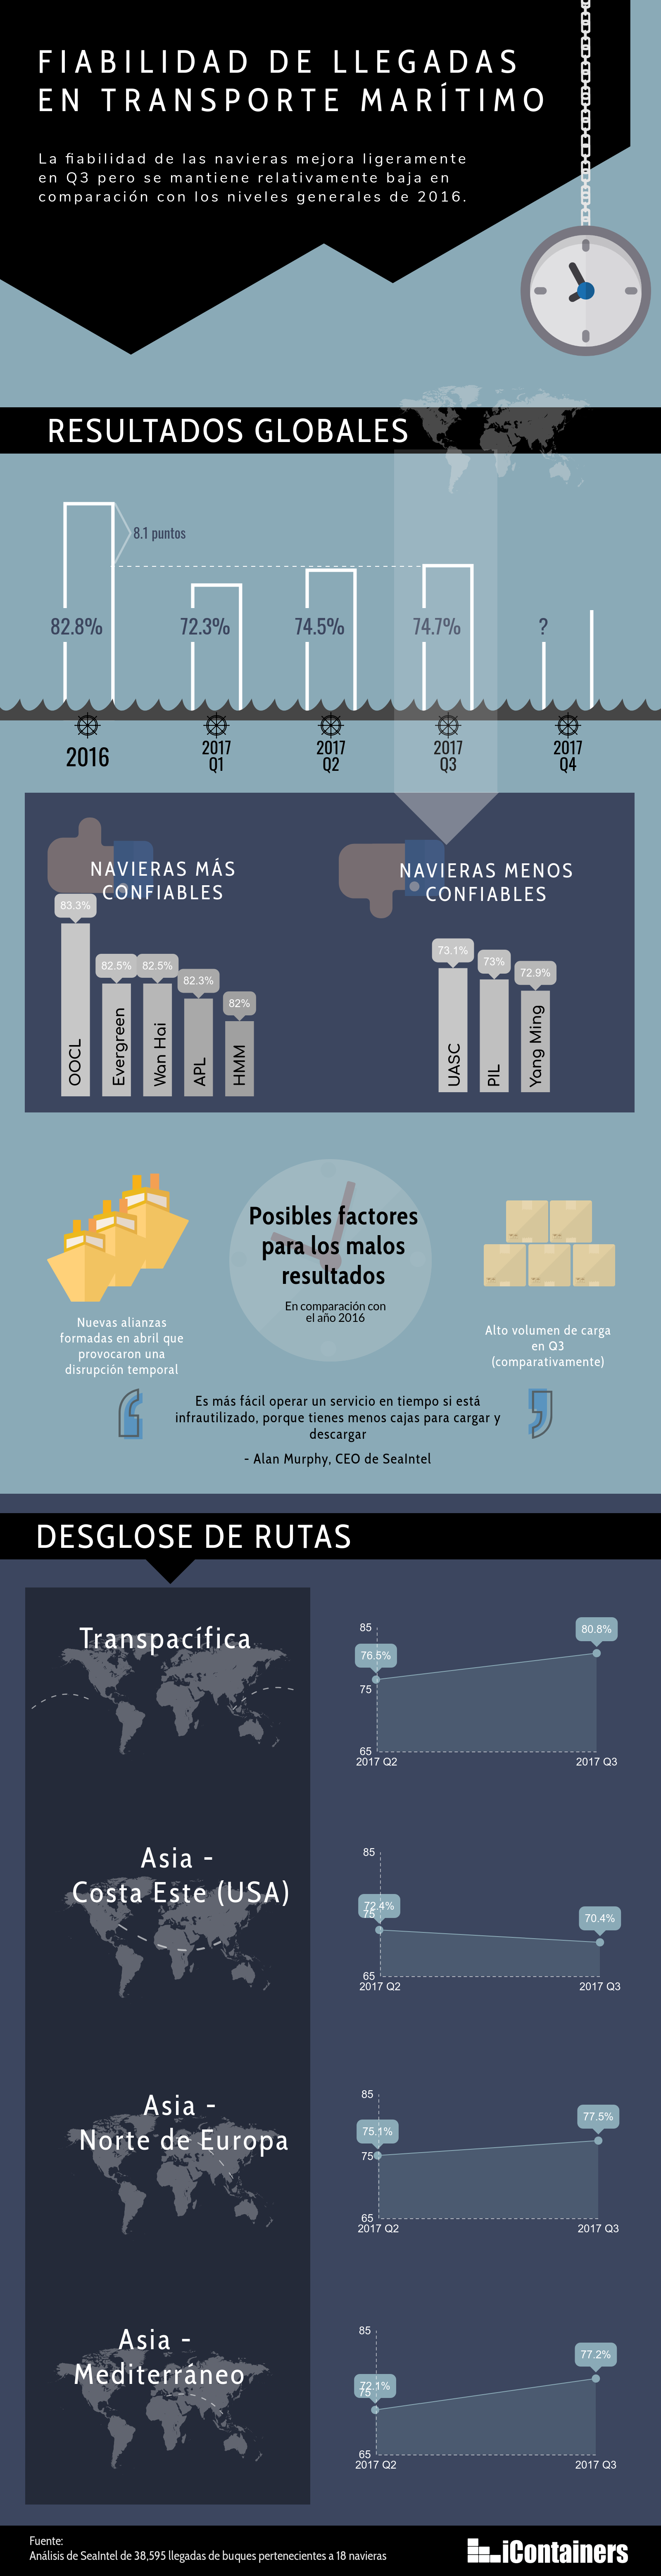 fiabilidad-navieras-infografia.png